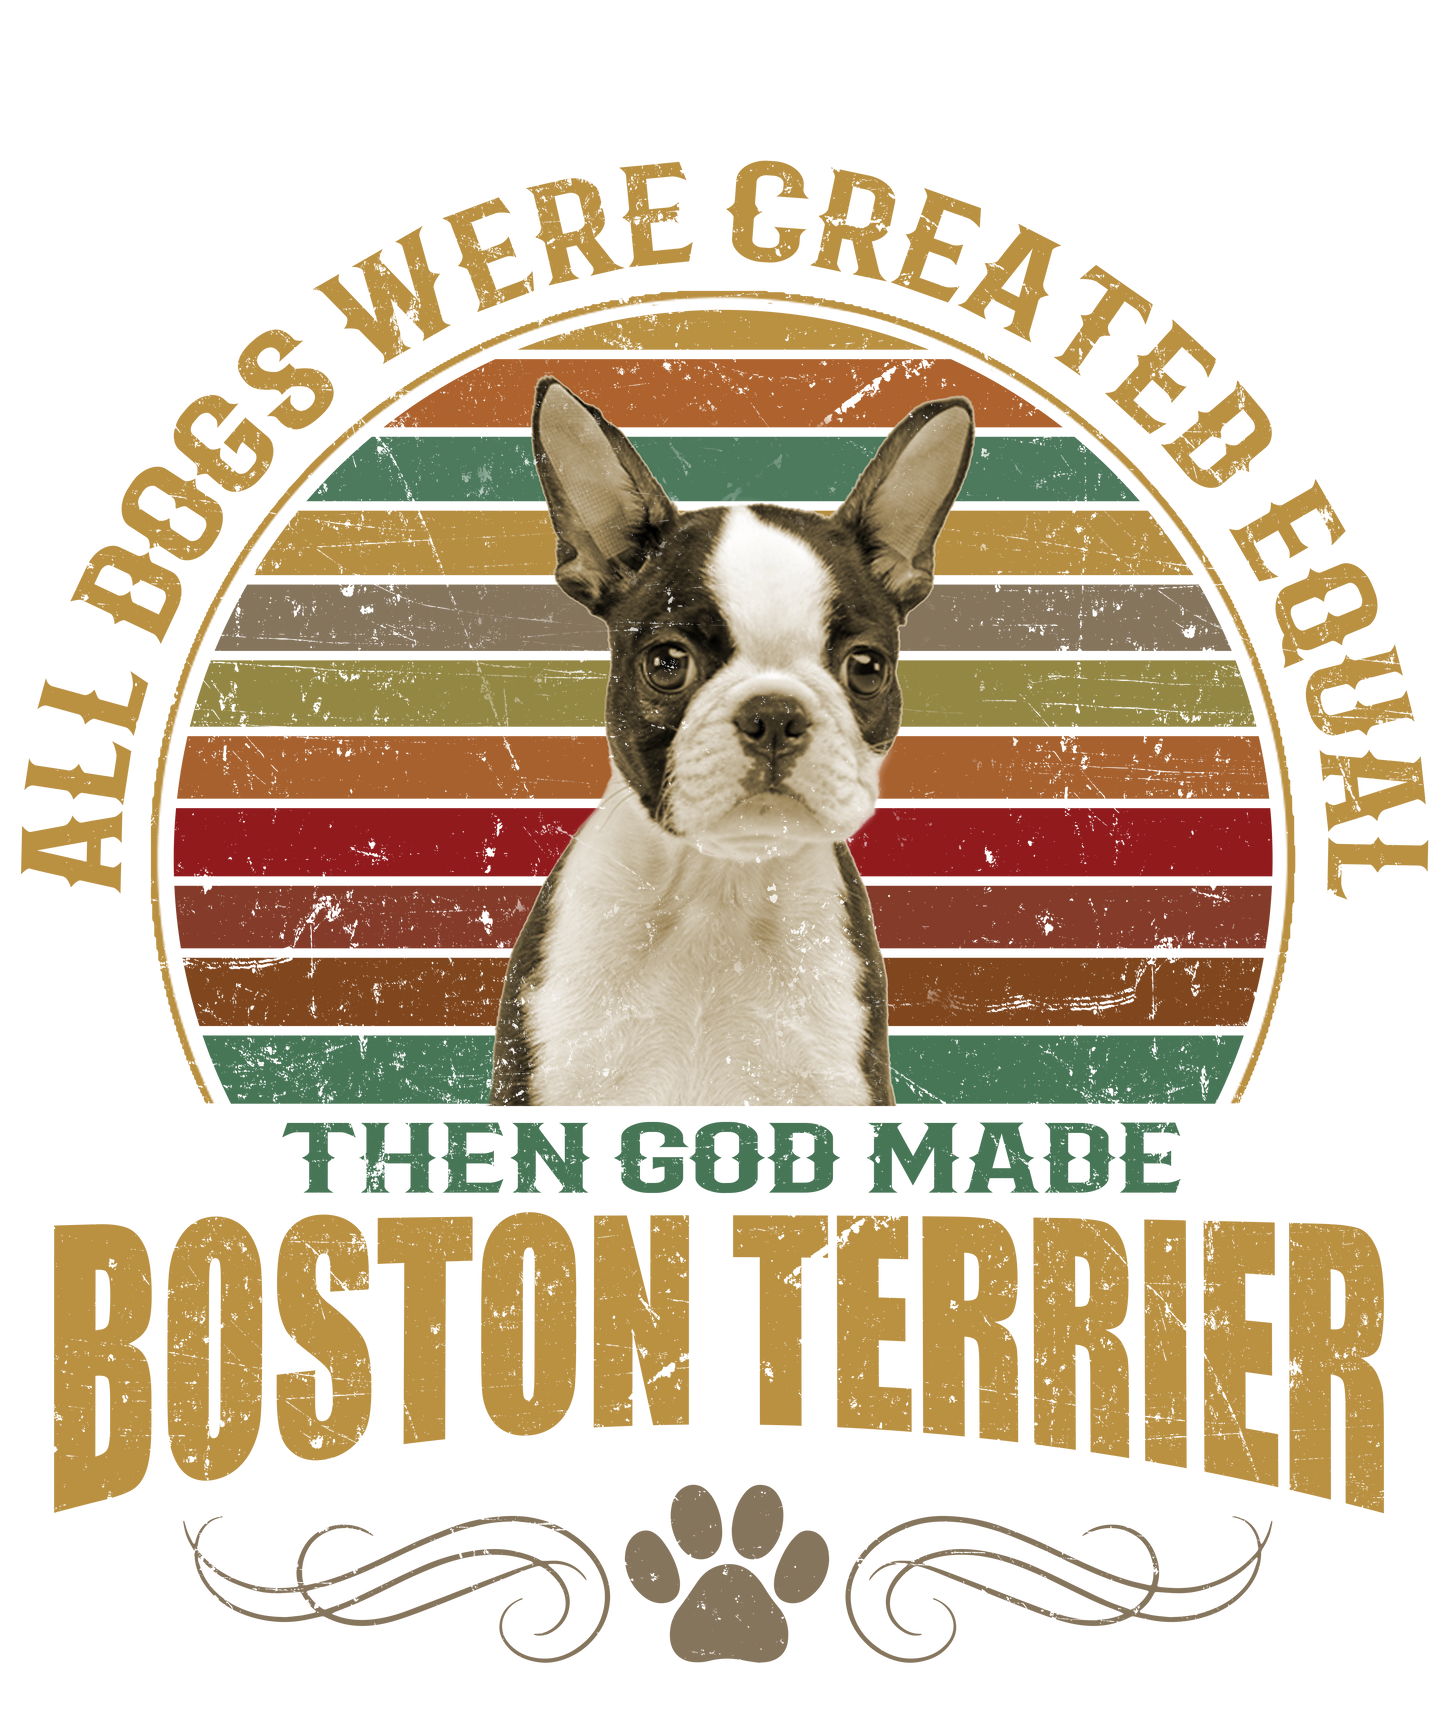 Boston Terrier Dog Lover Unisex Men’s T-Shirt Ready To Press DTF Transfer